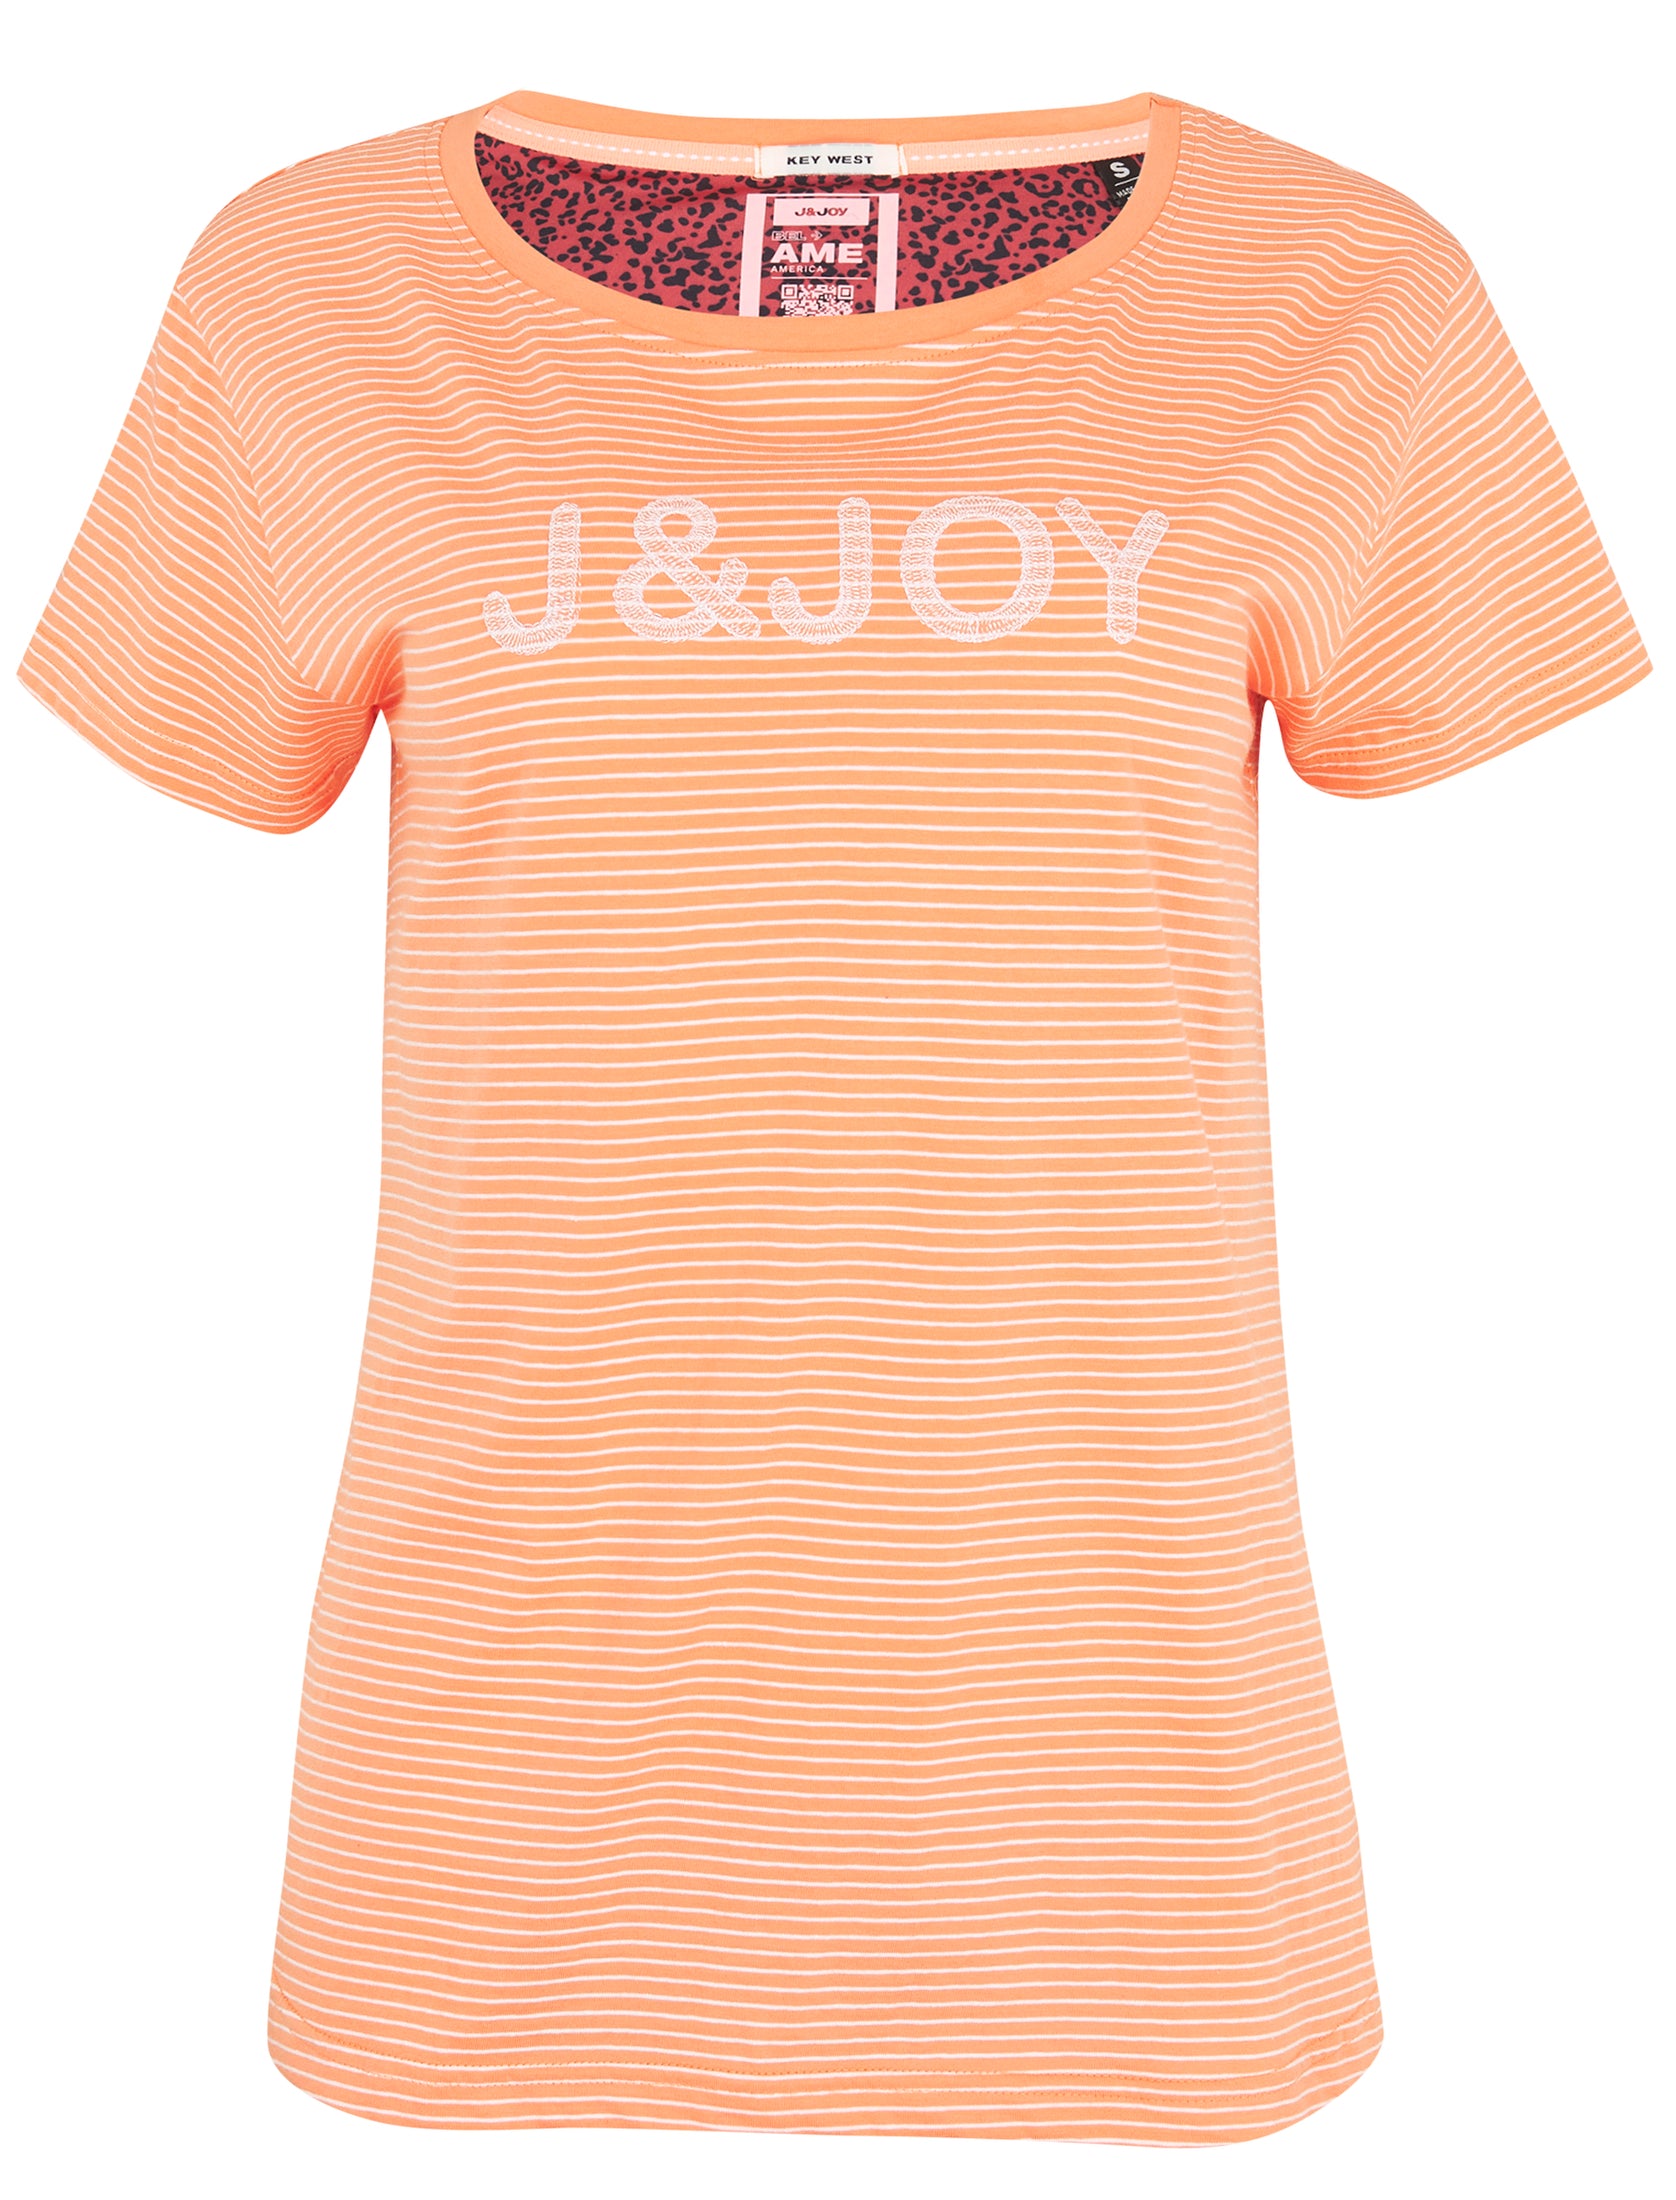 T-shirt Femme 01 Sunset Desert Flowers | J&JOY.